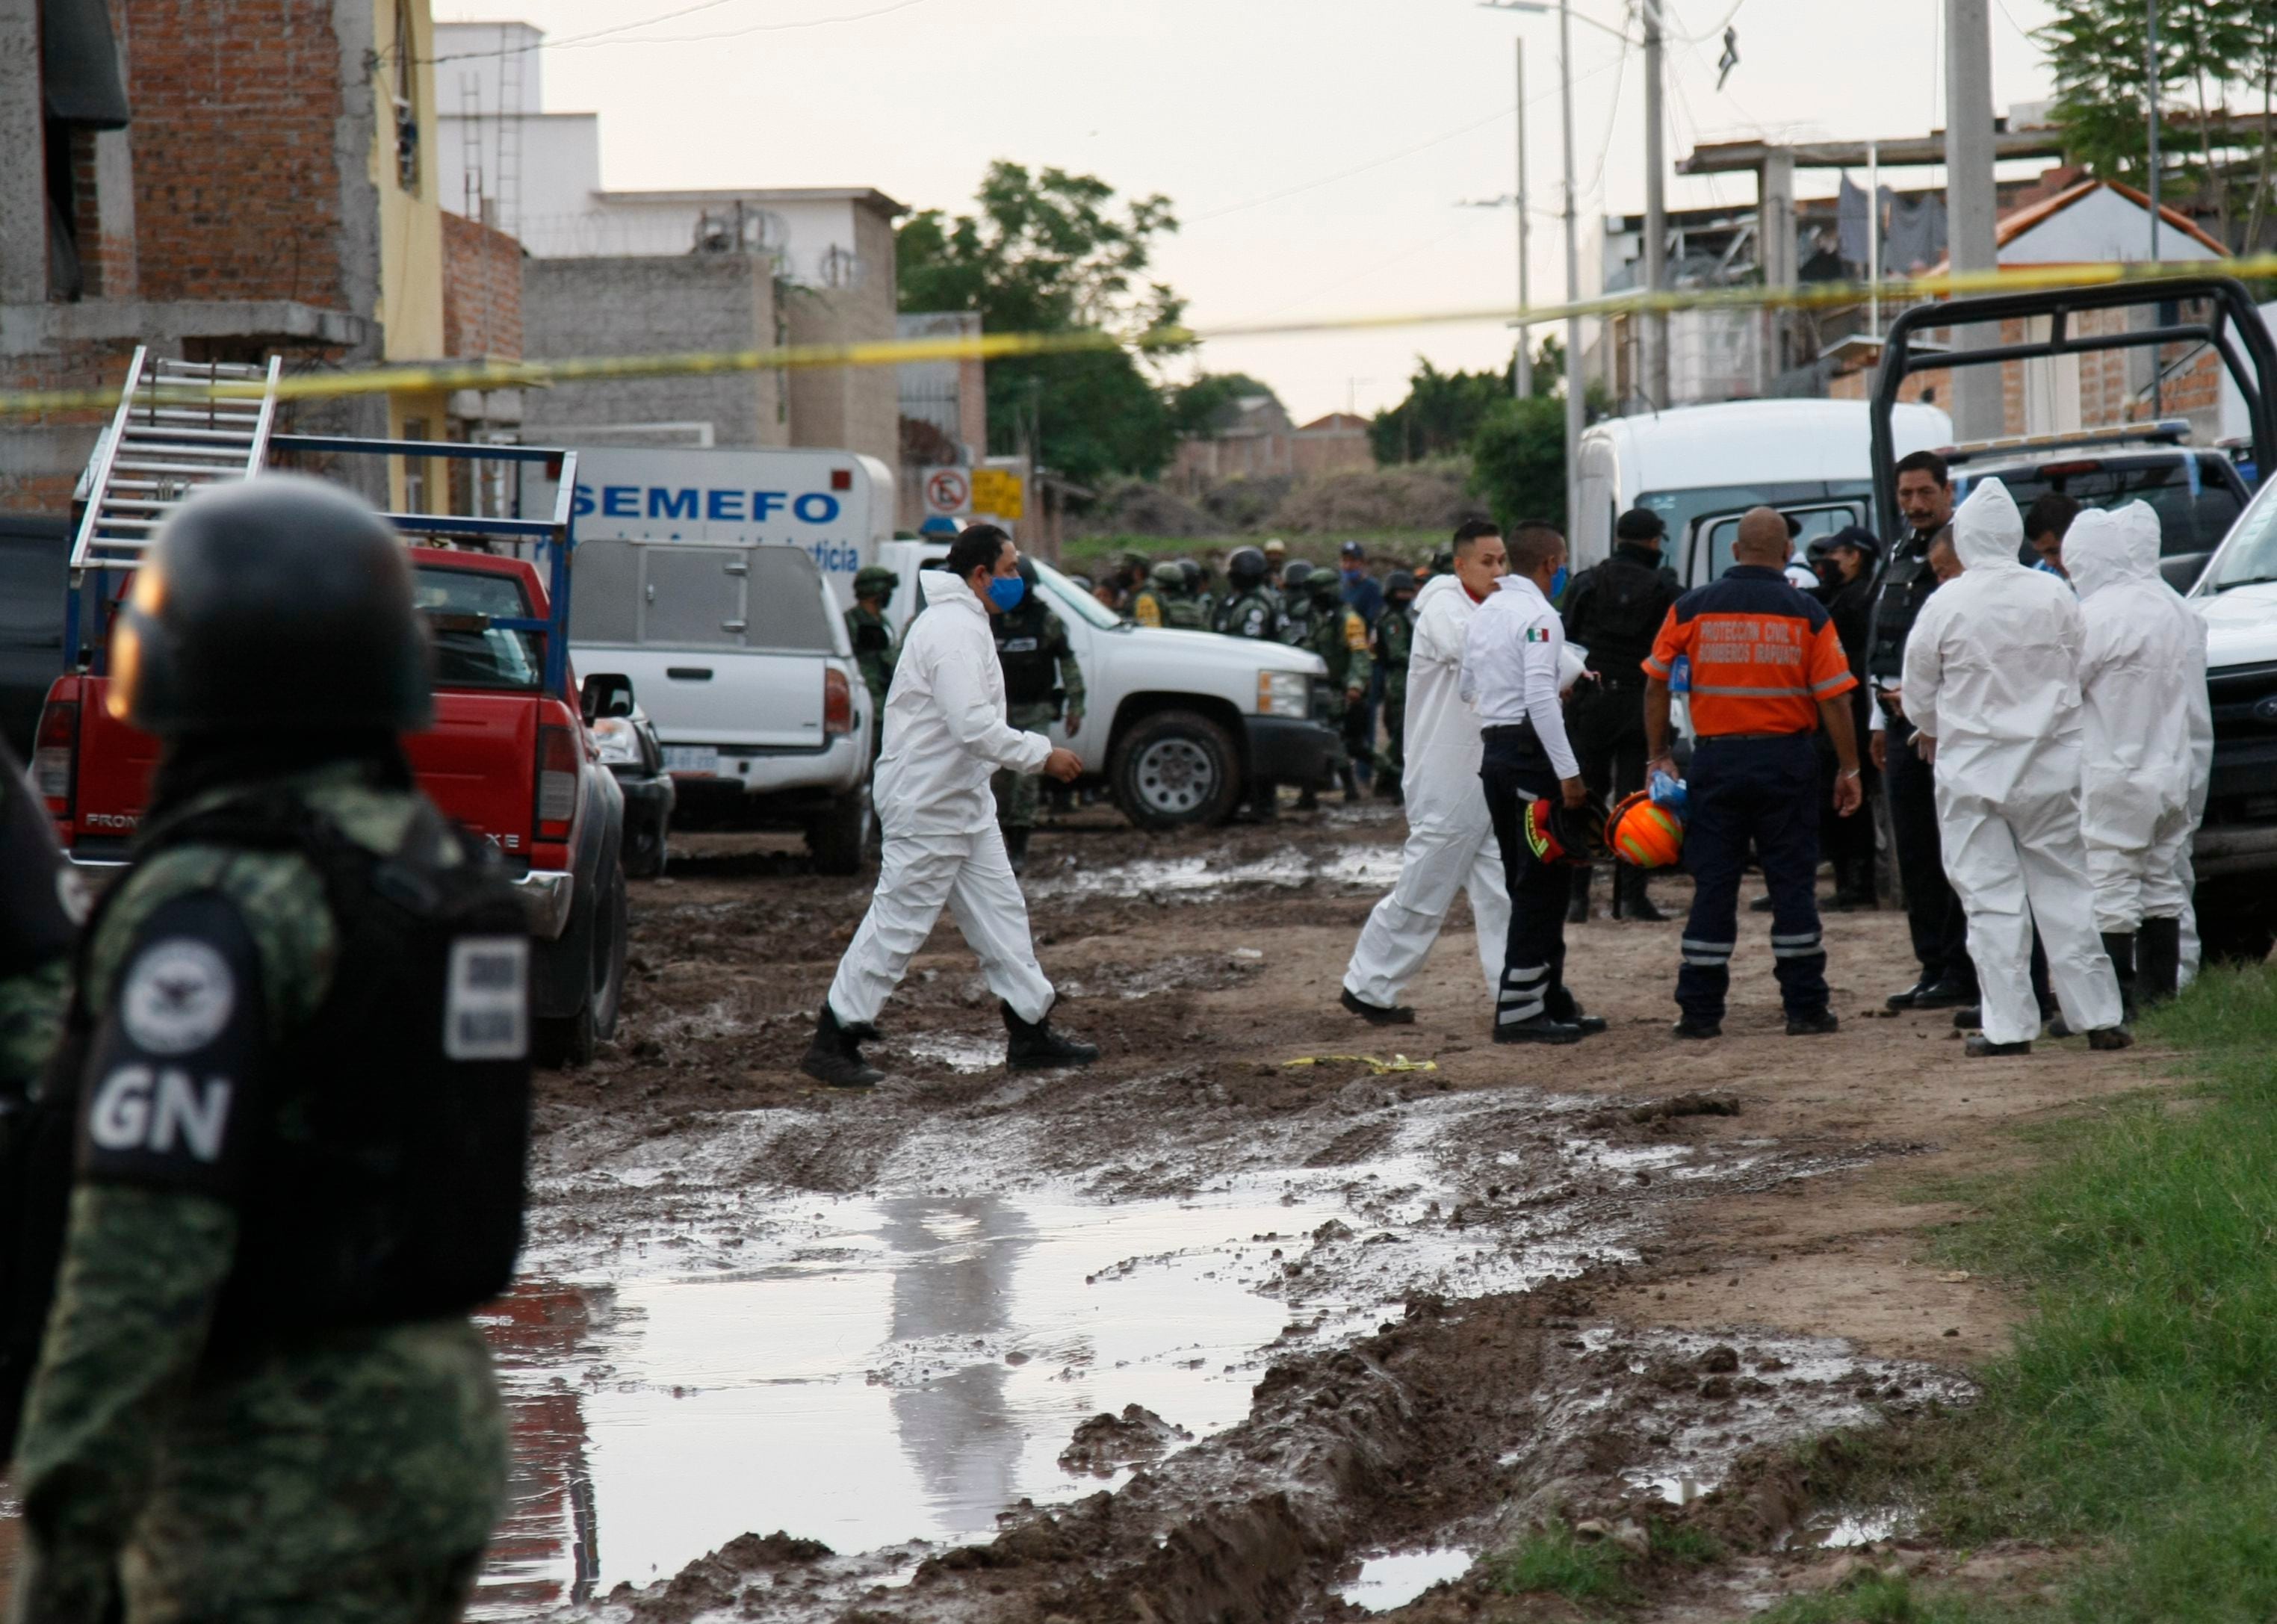 guanajuato - Irapuato -  mexico - violencia - guardia nacional - 02072020